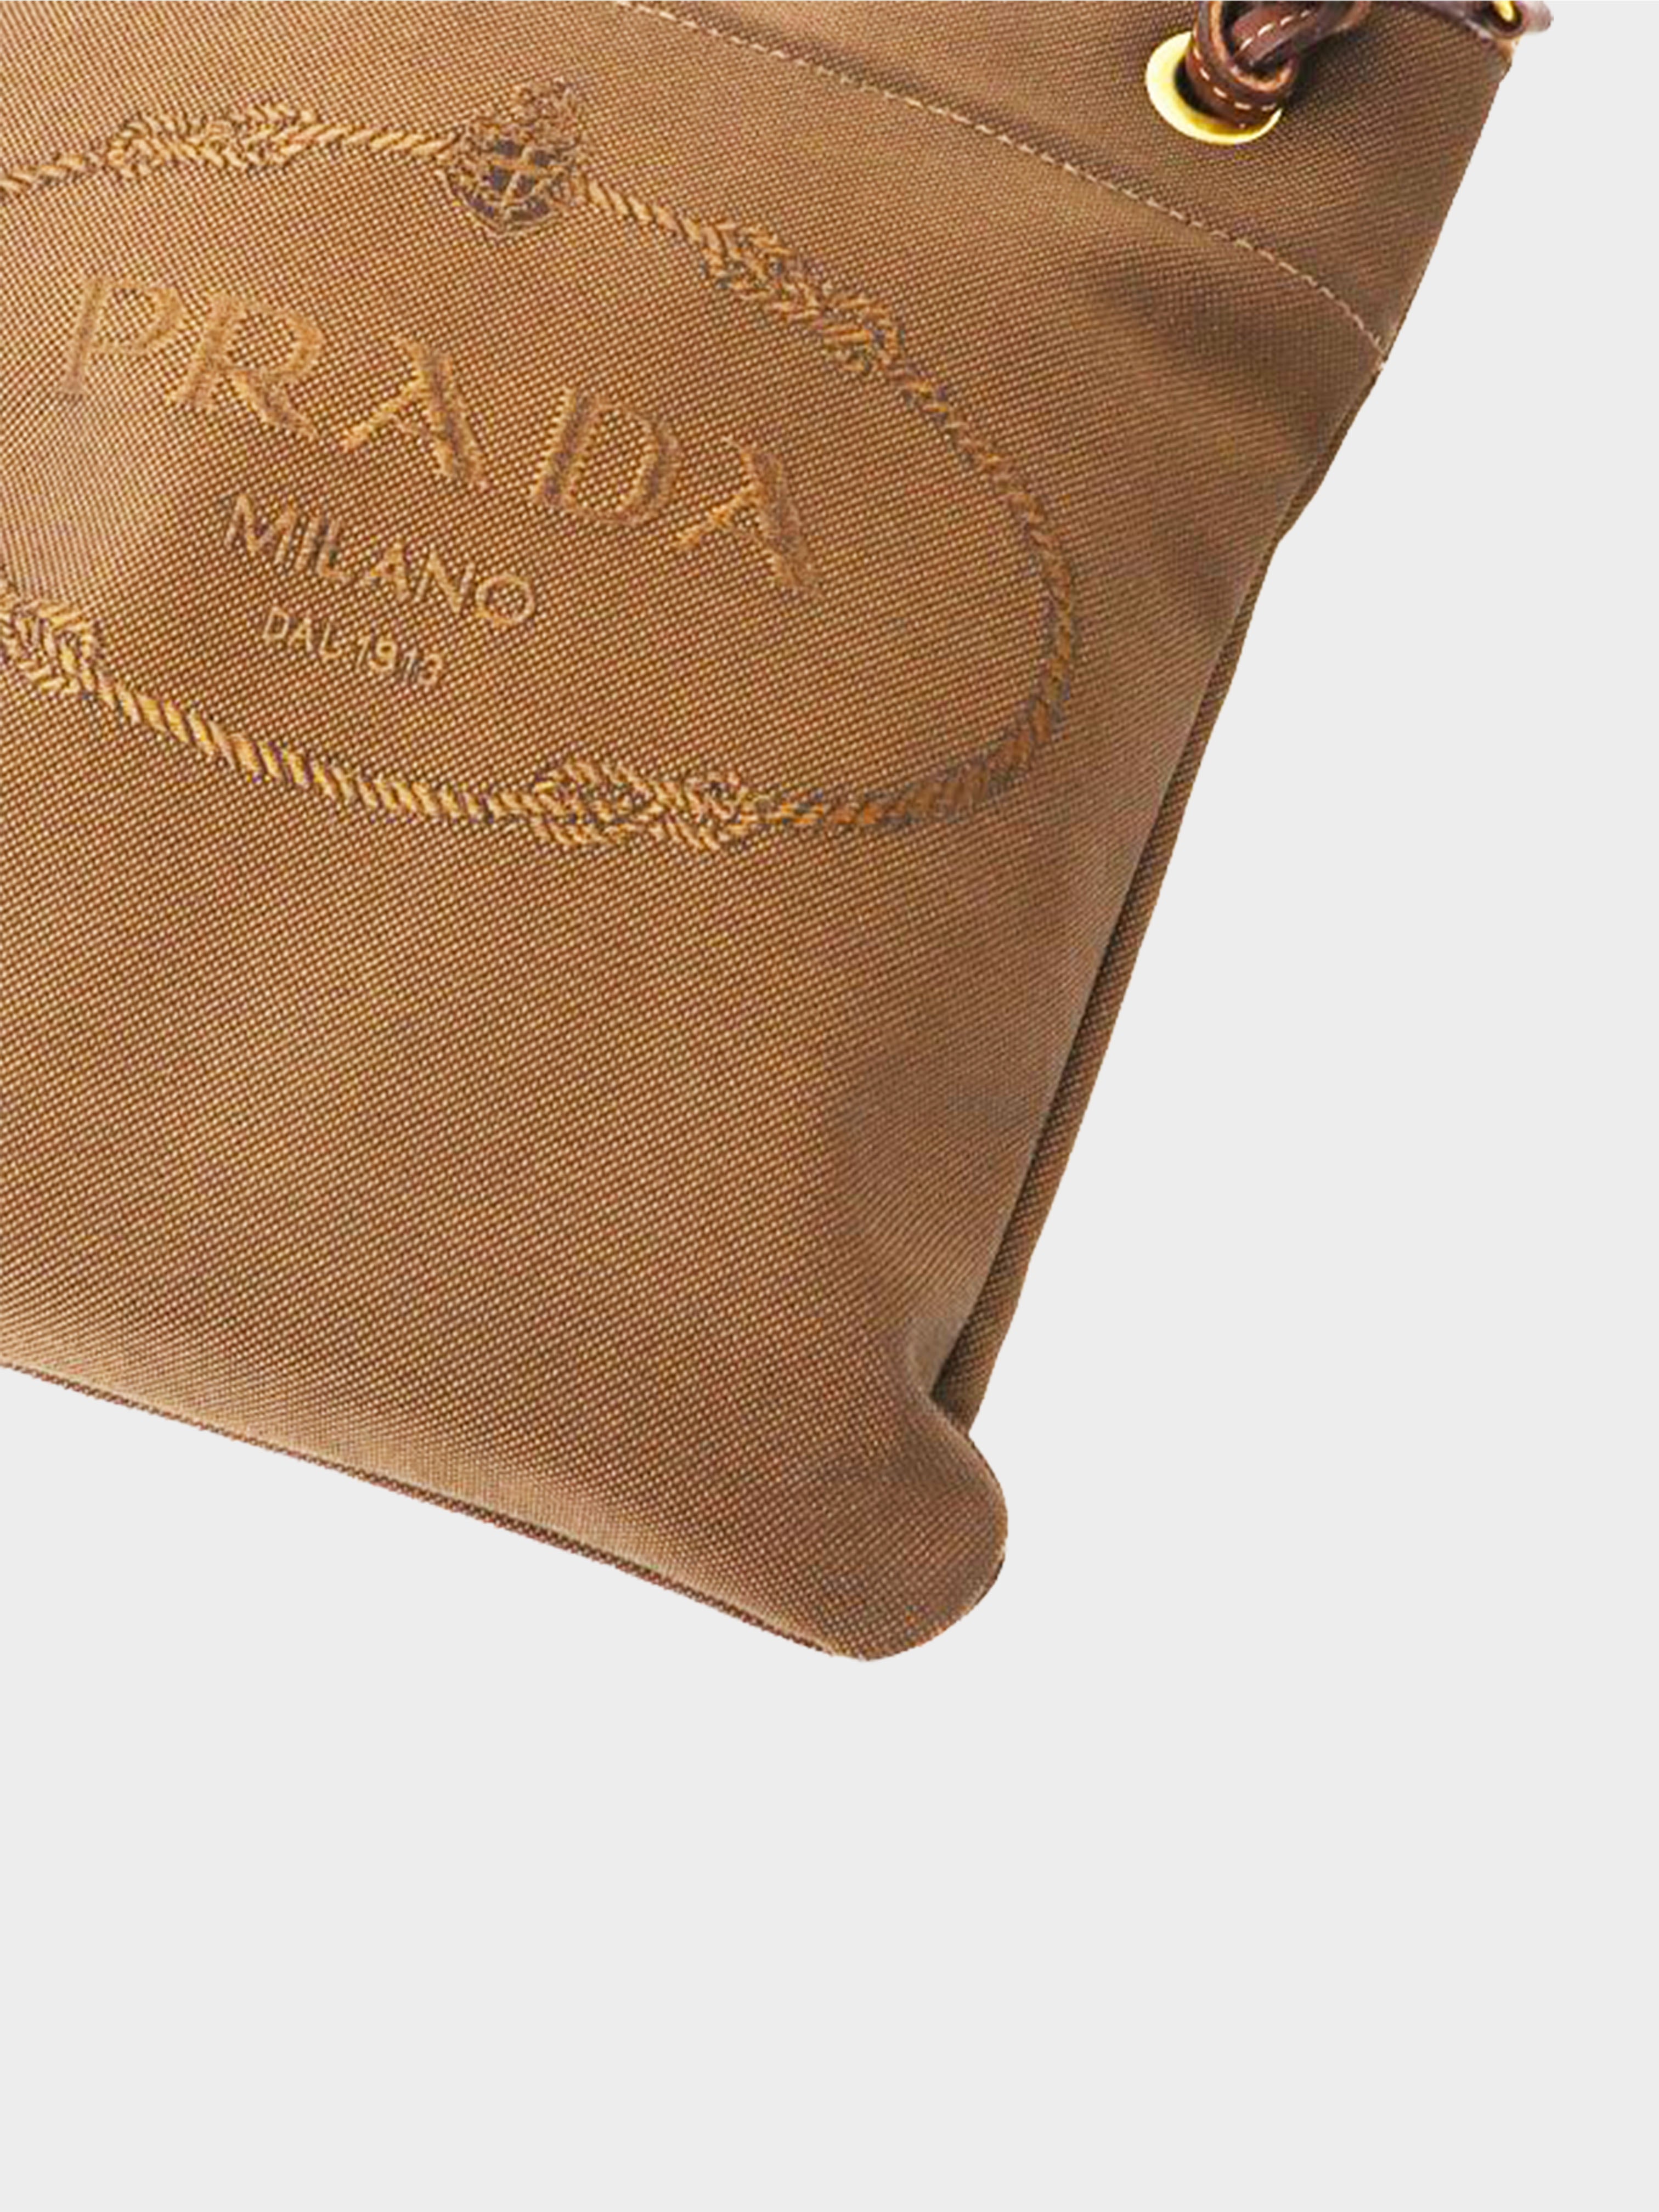 Prada Brown Canapa Canvas Crossbody Bag